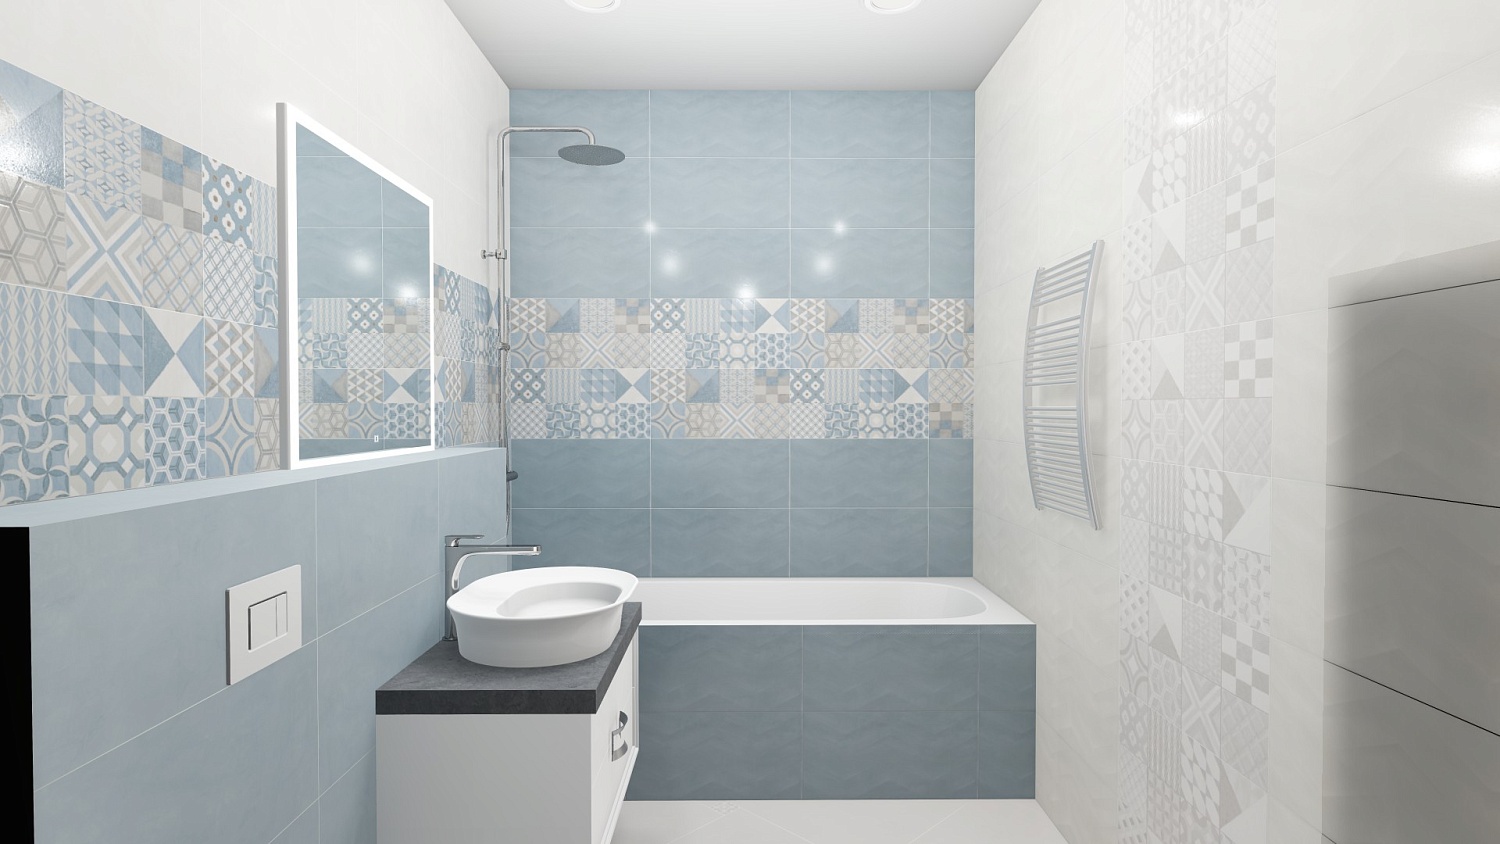 Дизайн ванной комнаты (фото с примерами)